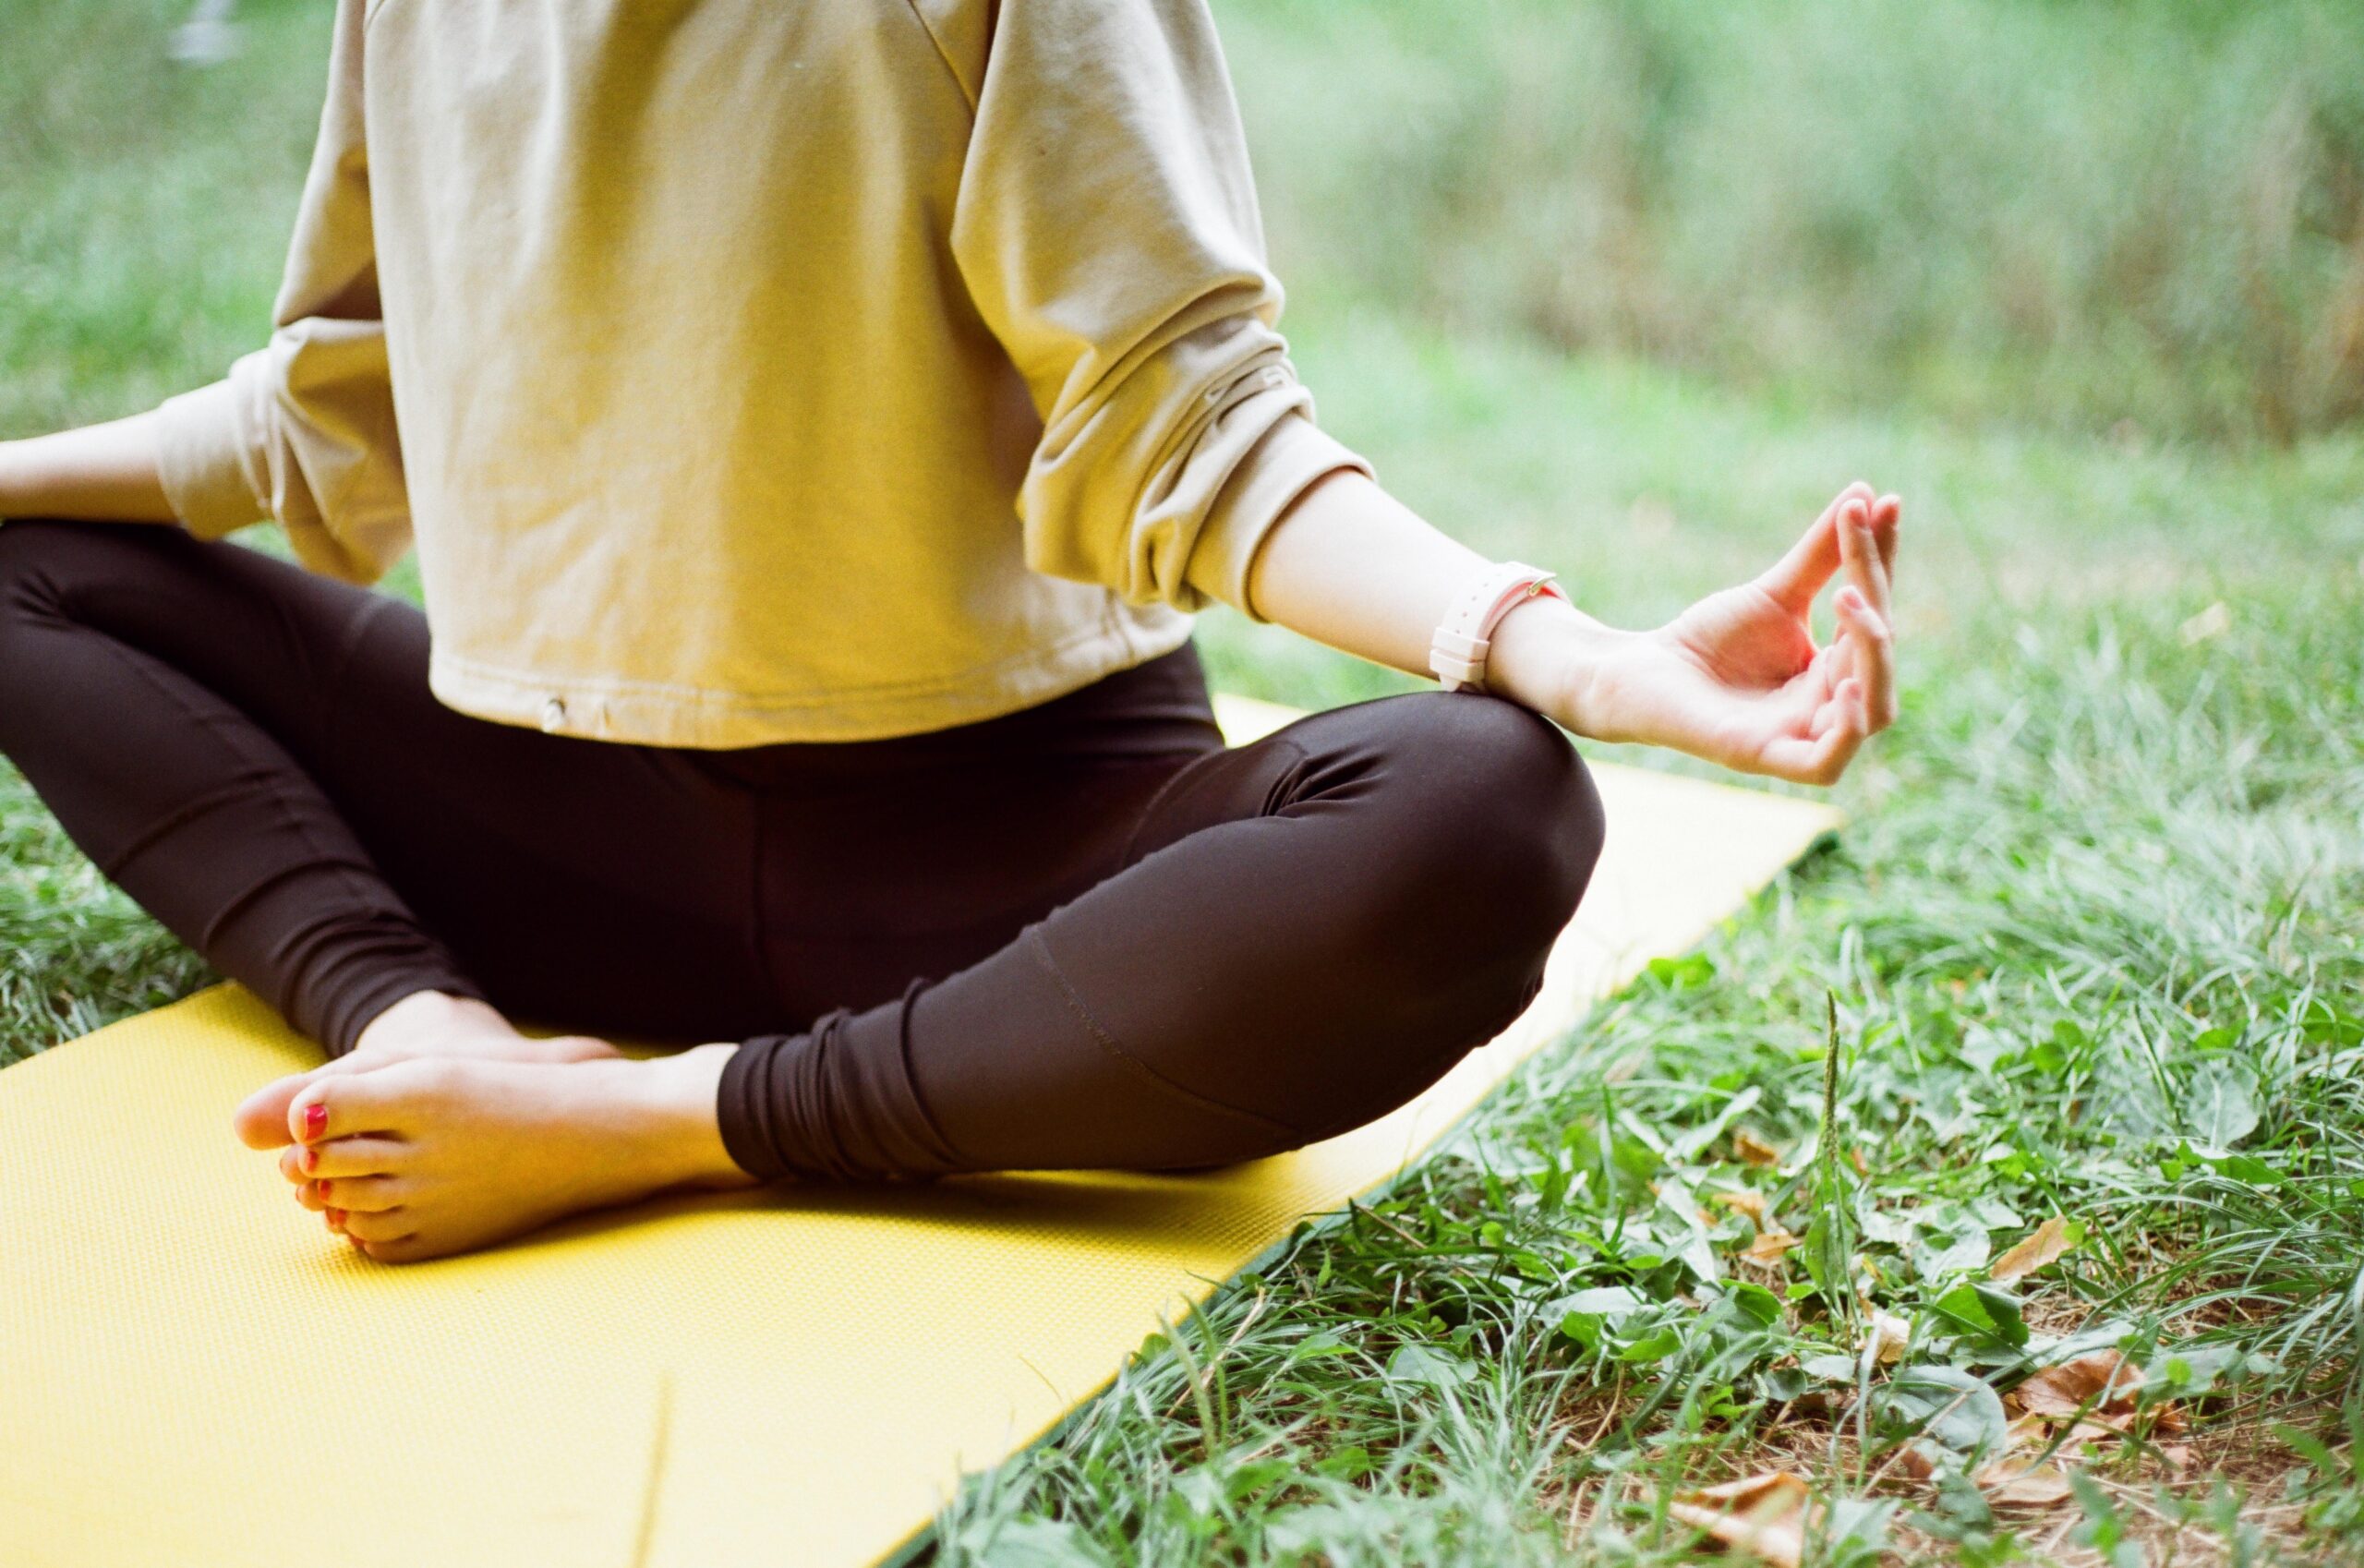 O yoga une o corpo, mente e espírito em uma prática única que nos conduz ao autoconhecimento.